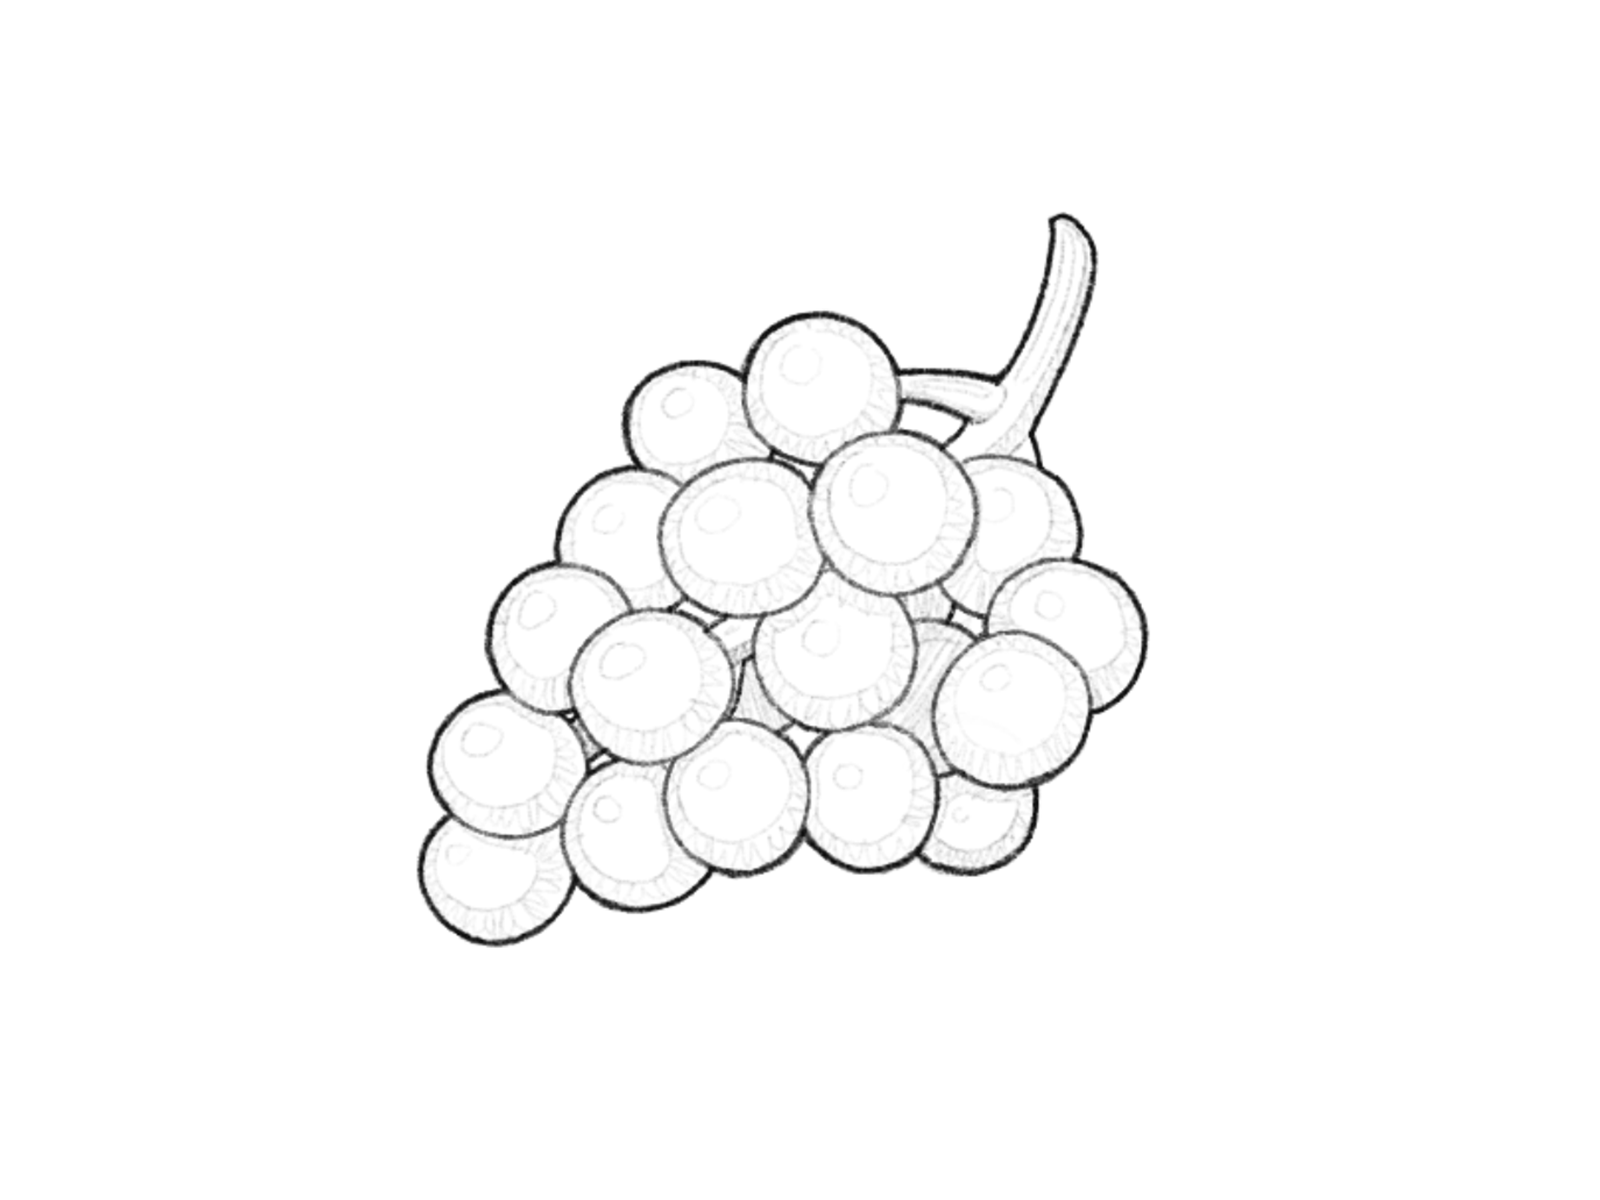 Grapes : r/drawing